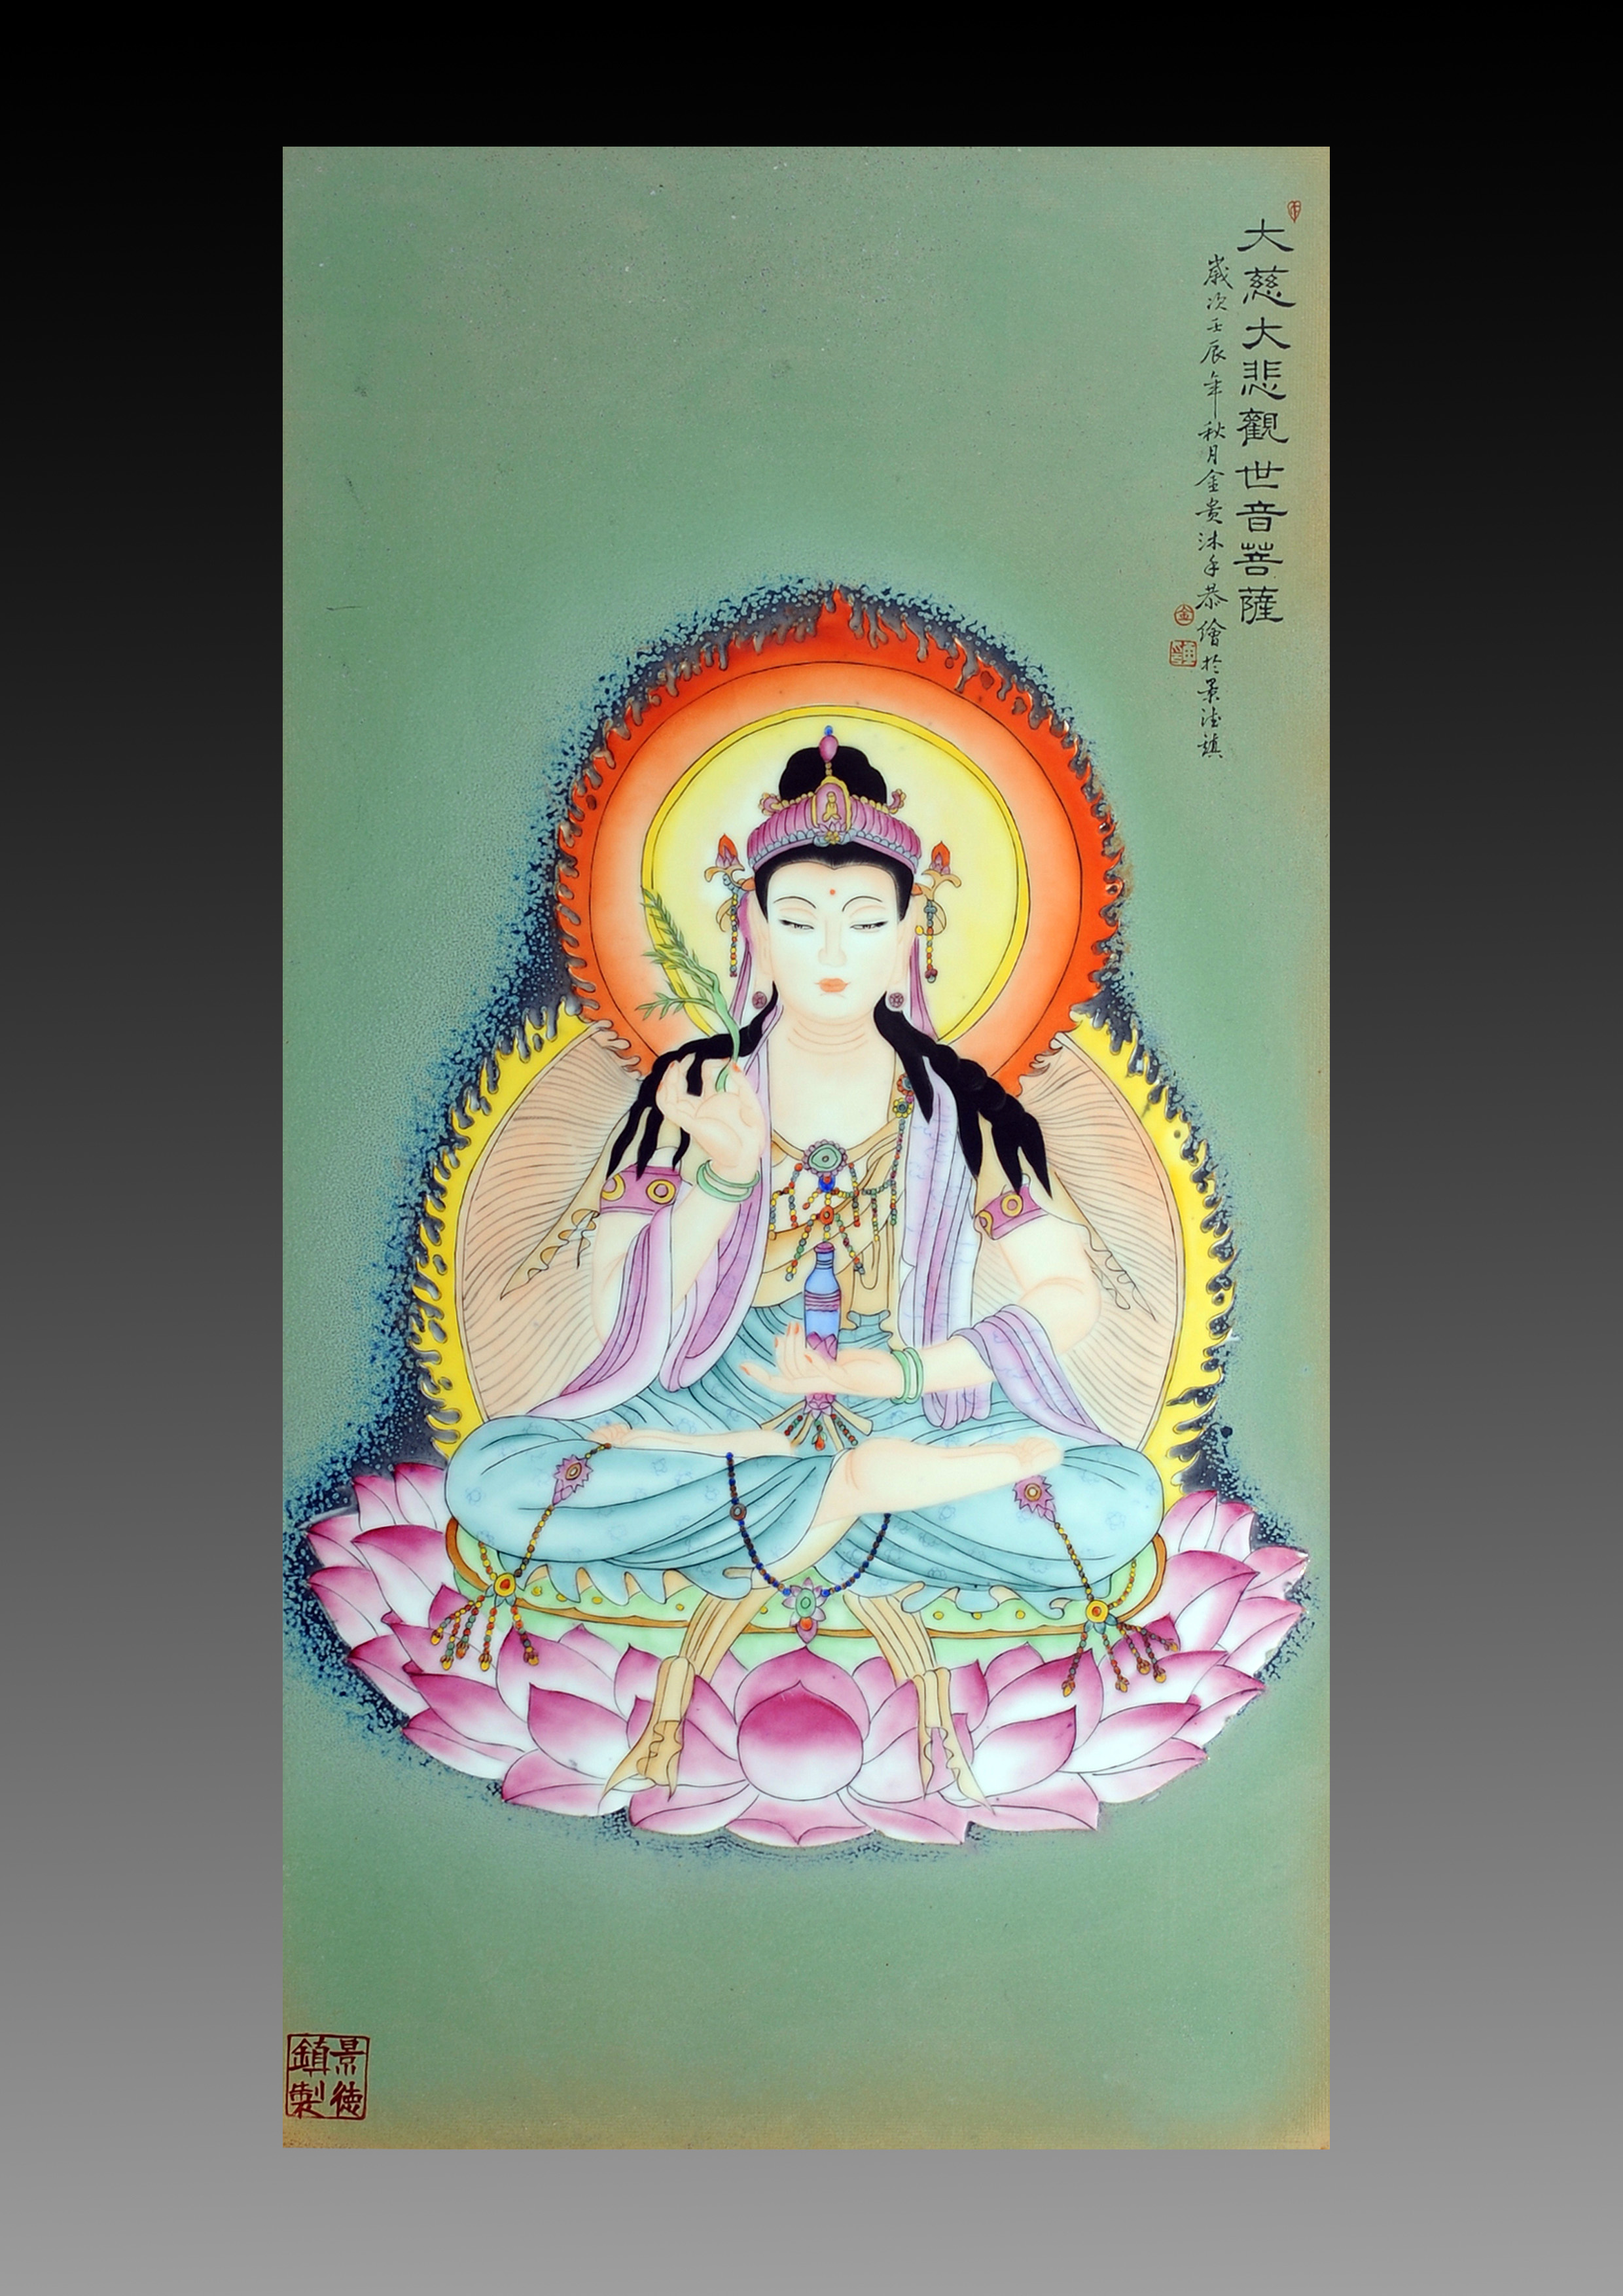 高溫顏色釉佛教題材瓷板畫